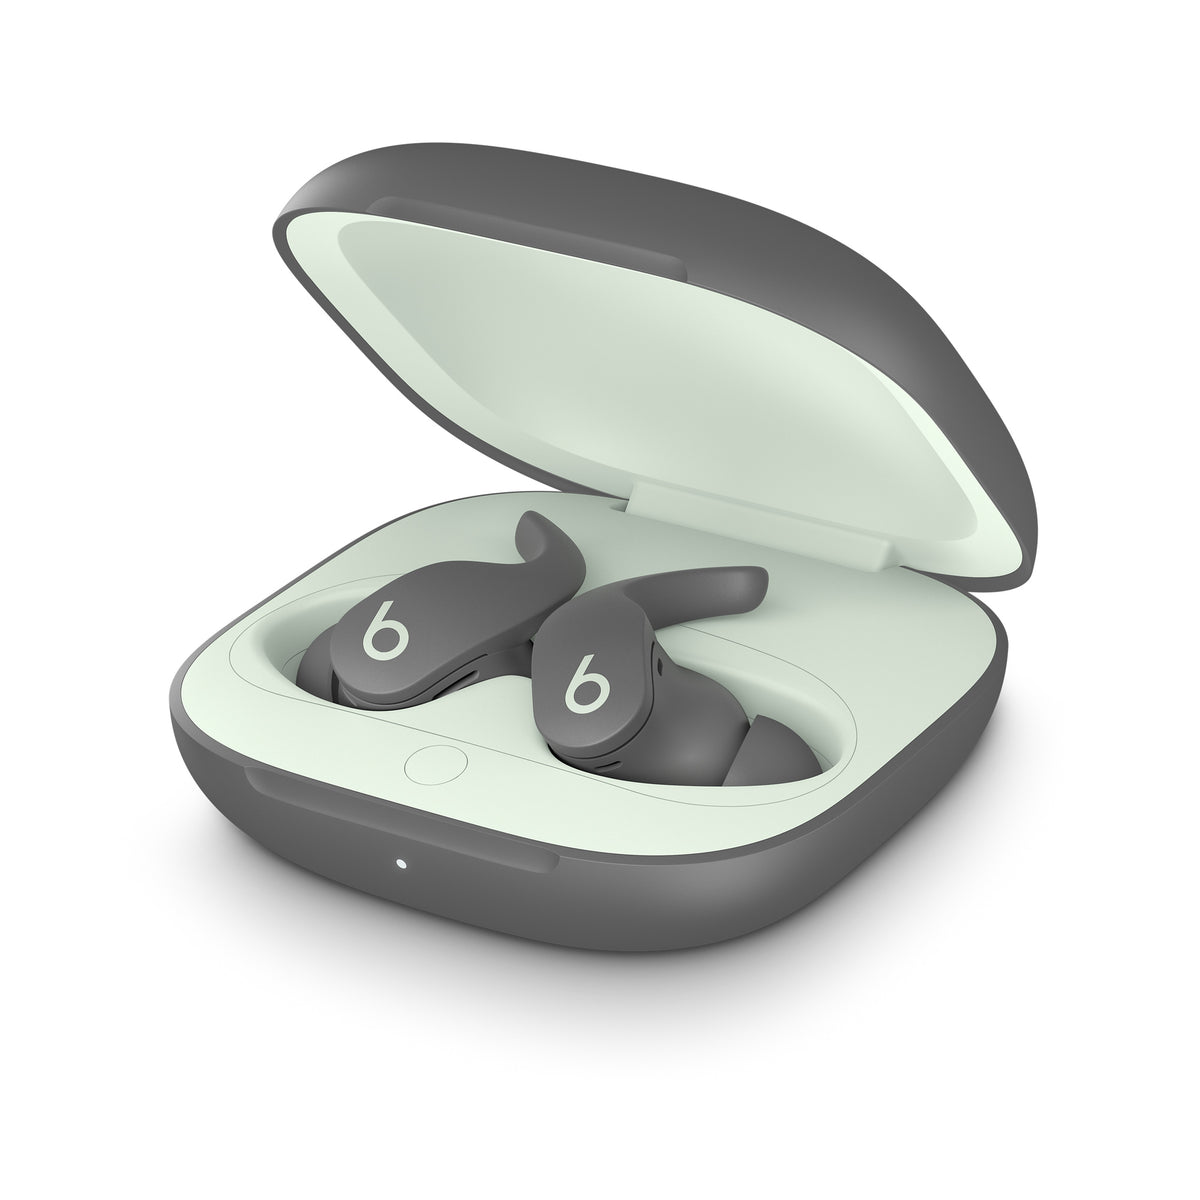 Apple Beats Fit Pro True Wireless Earbuds — Sage Grey